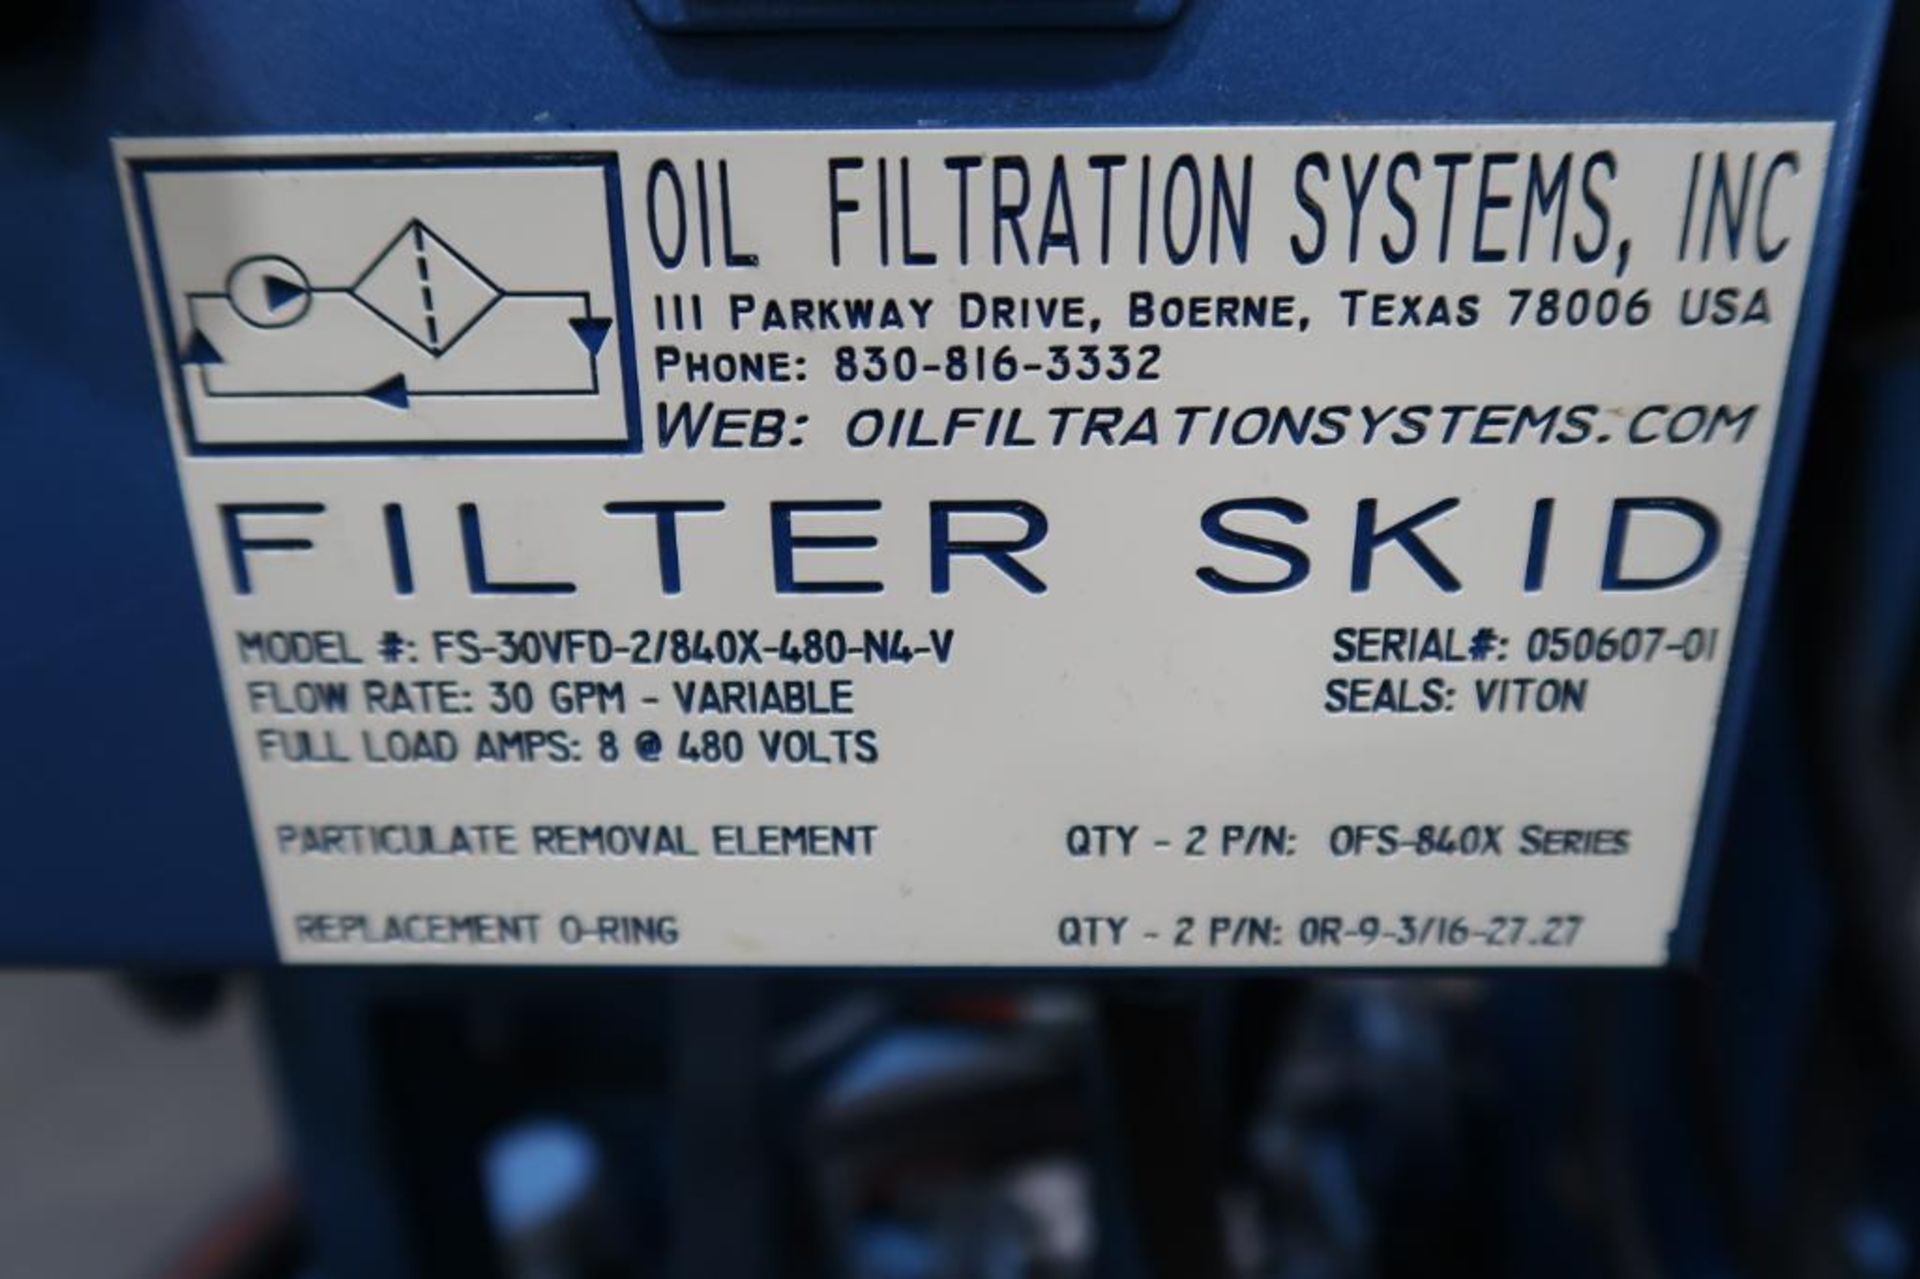 Oil Filtration Systems Inc. Model FS-30VFD-2/840X-480-N4-V, Filtration System Filter Skid - Bild 4 aus 6